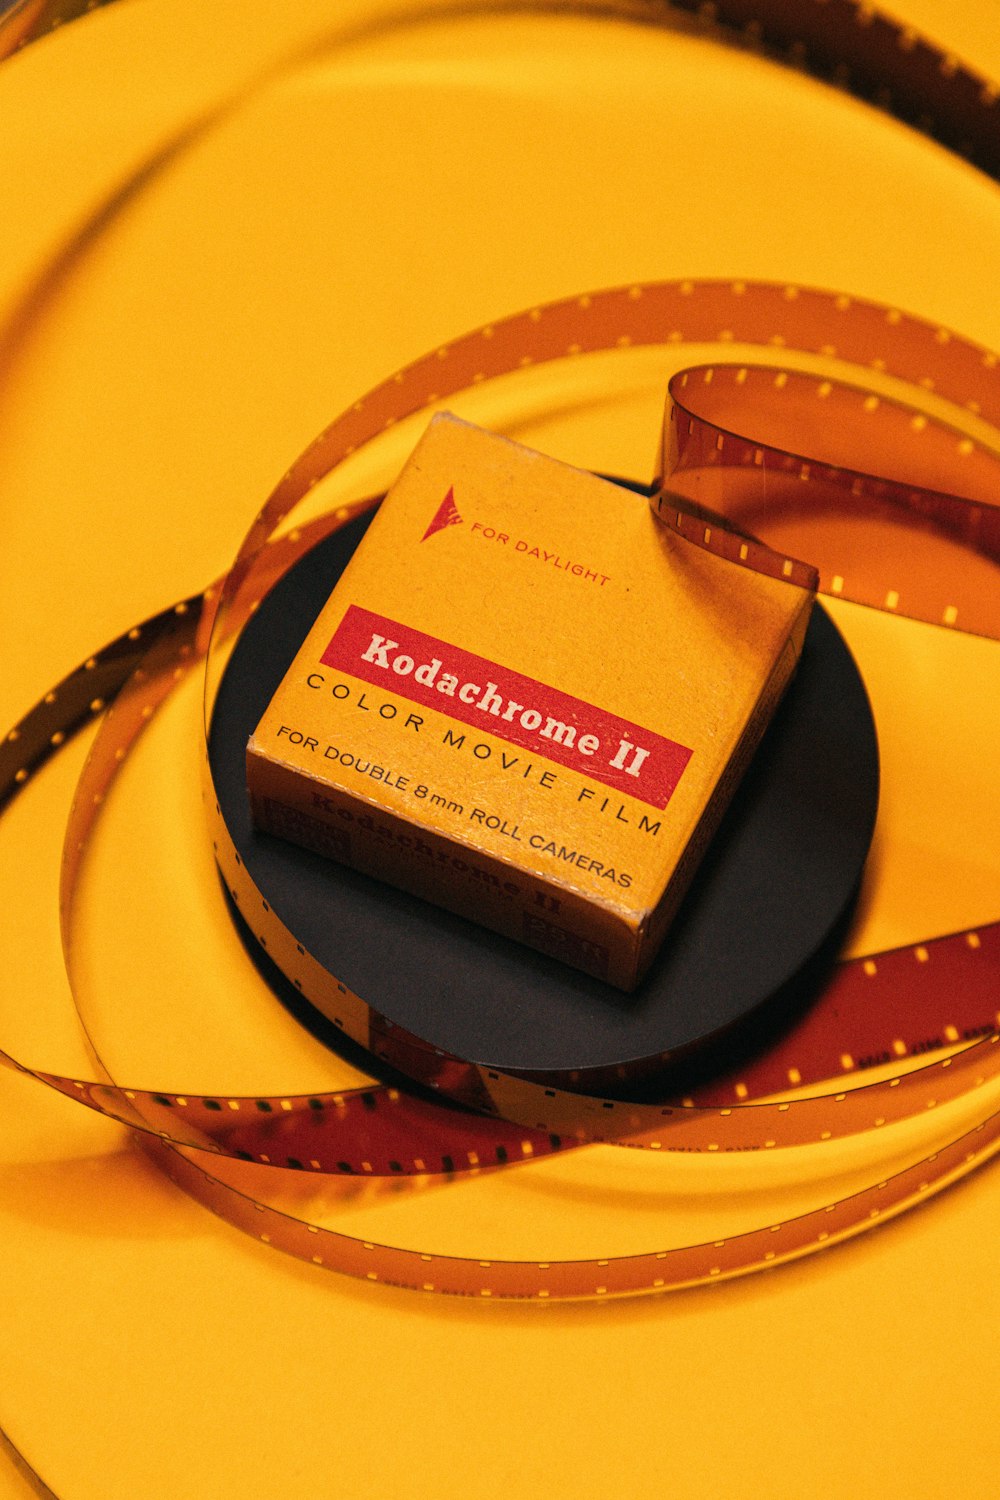 Kodachrome 2 color movie film box